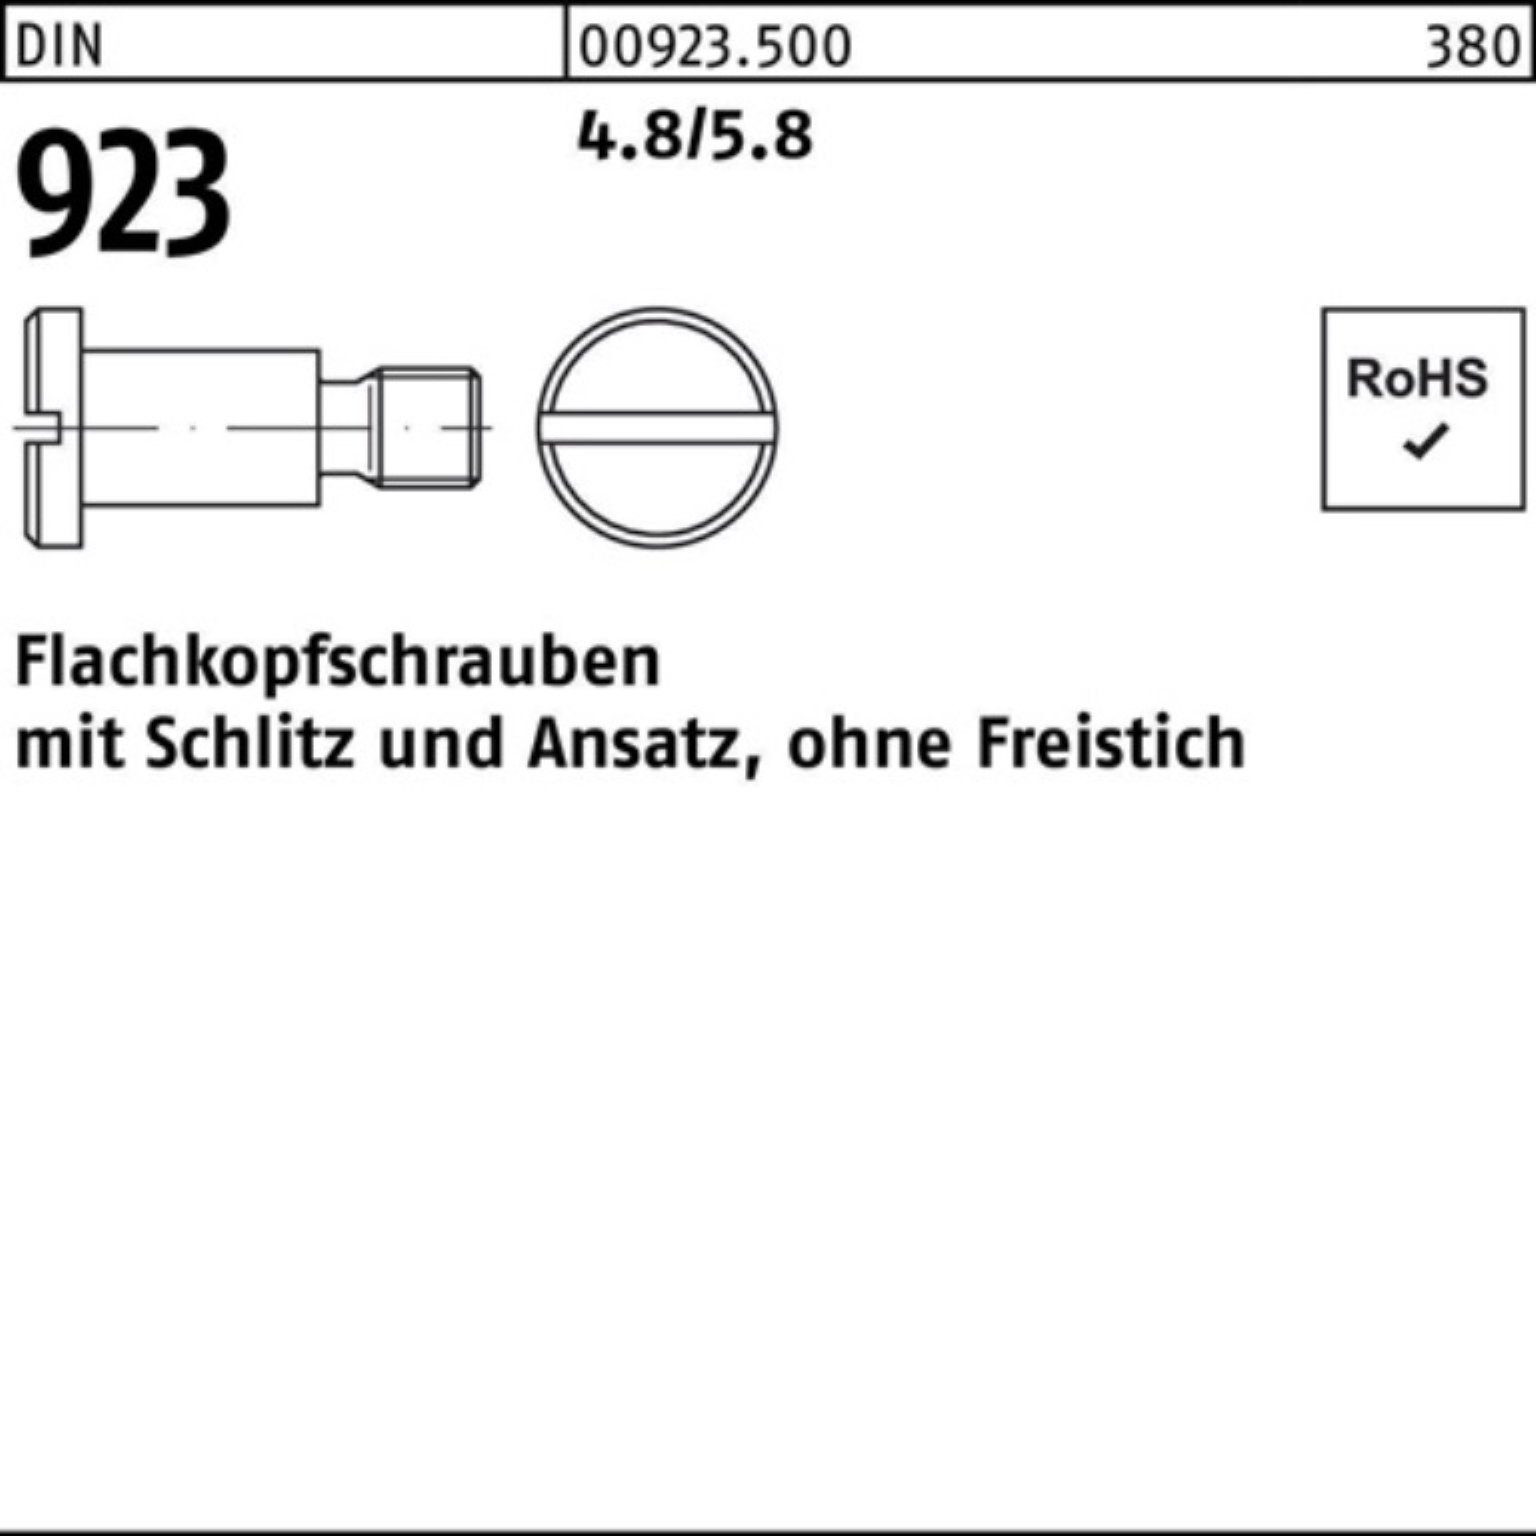 M6x Reyher Flachkopfschraube 100er 6x Schraube 923 9,0 Pack 4.8/5.8 DIN Schlitz/Ansatz